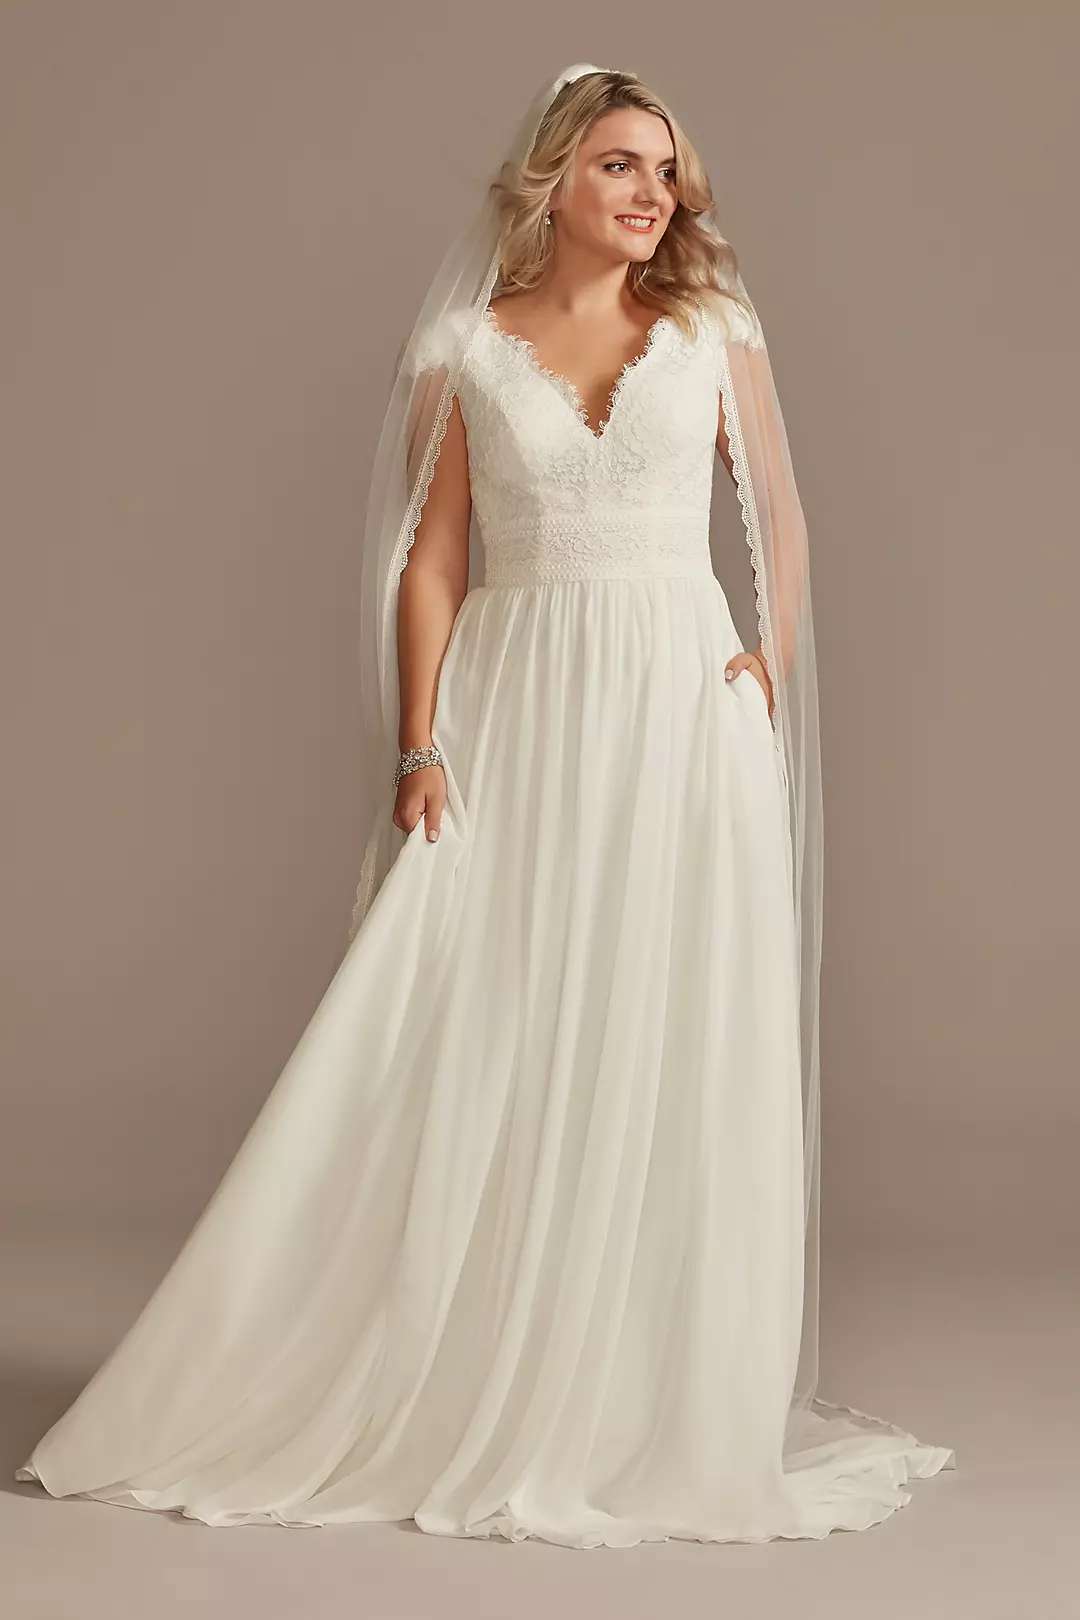 Lace Illusion Back Chiffon Wedding Dress Image